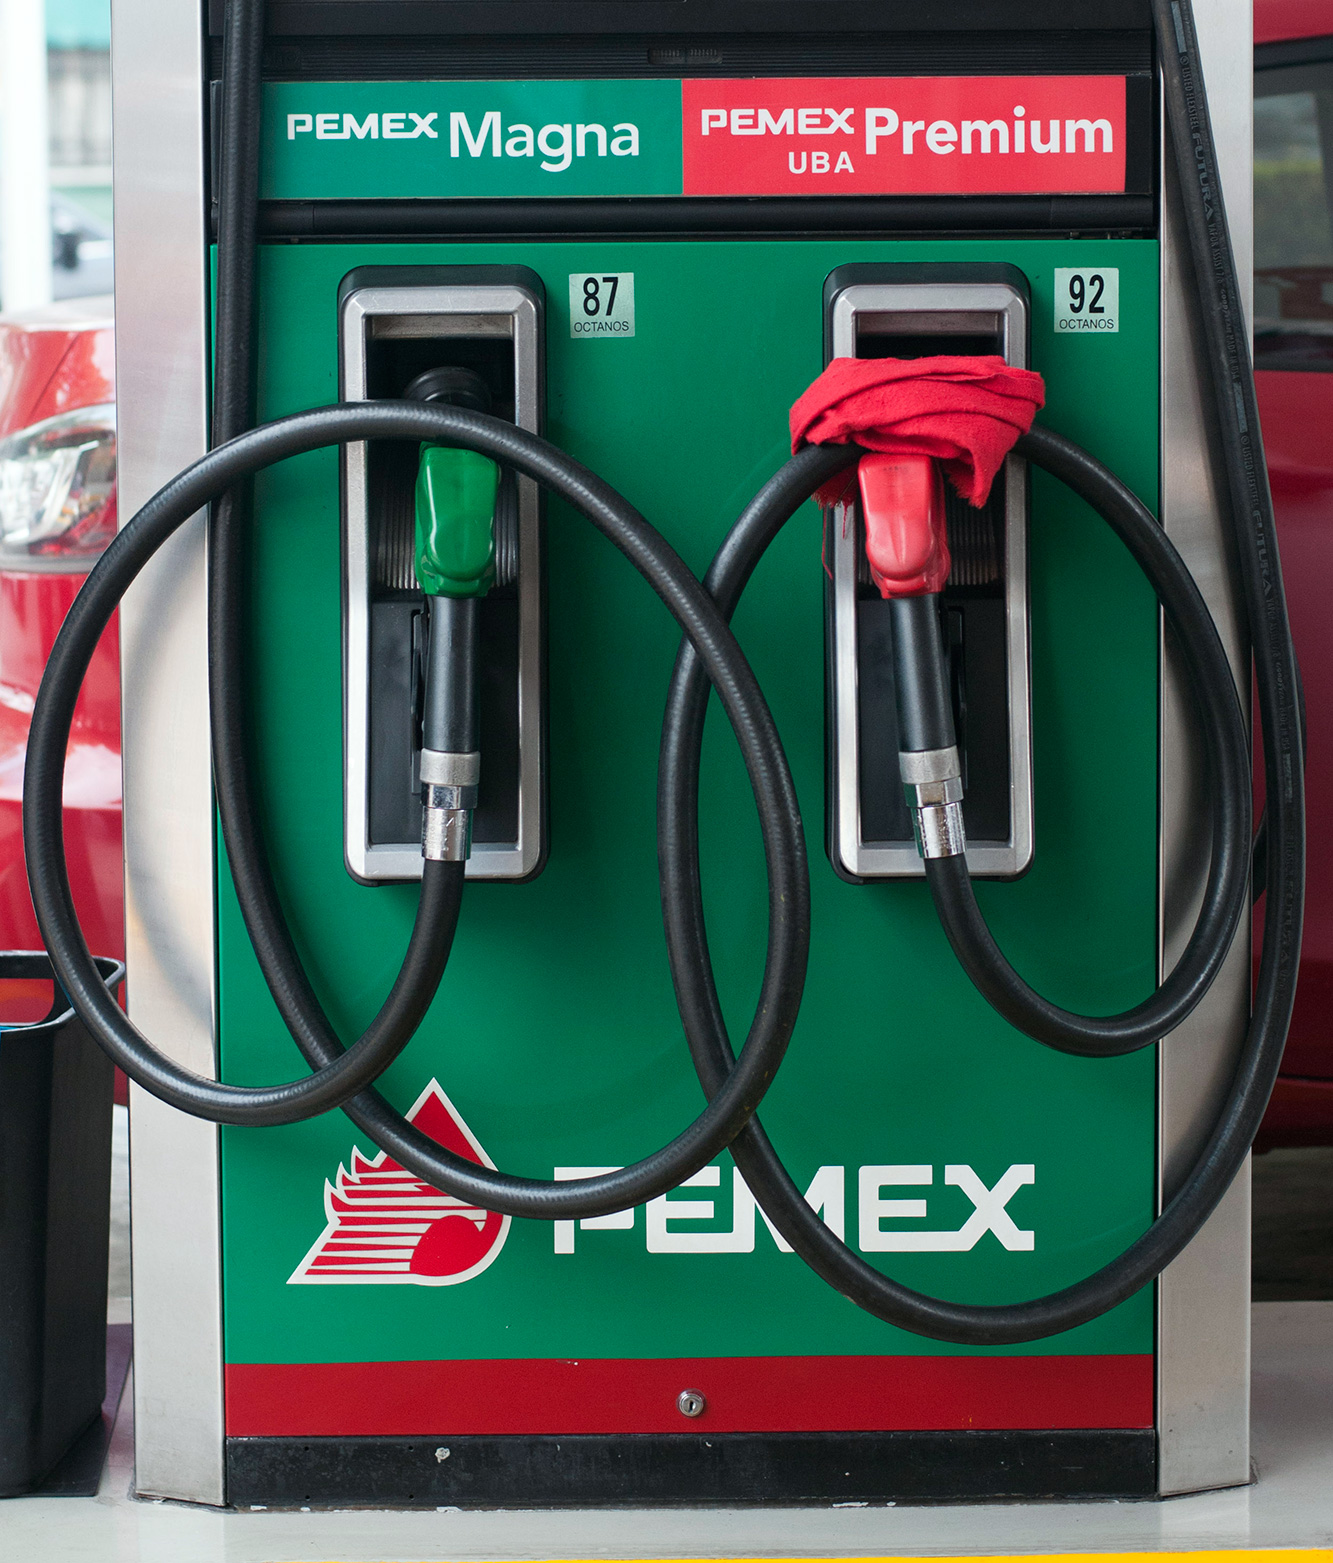  Gasolina sube de precio y aún así prefieren cada vez la “más cara”